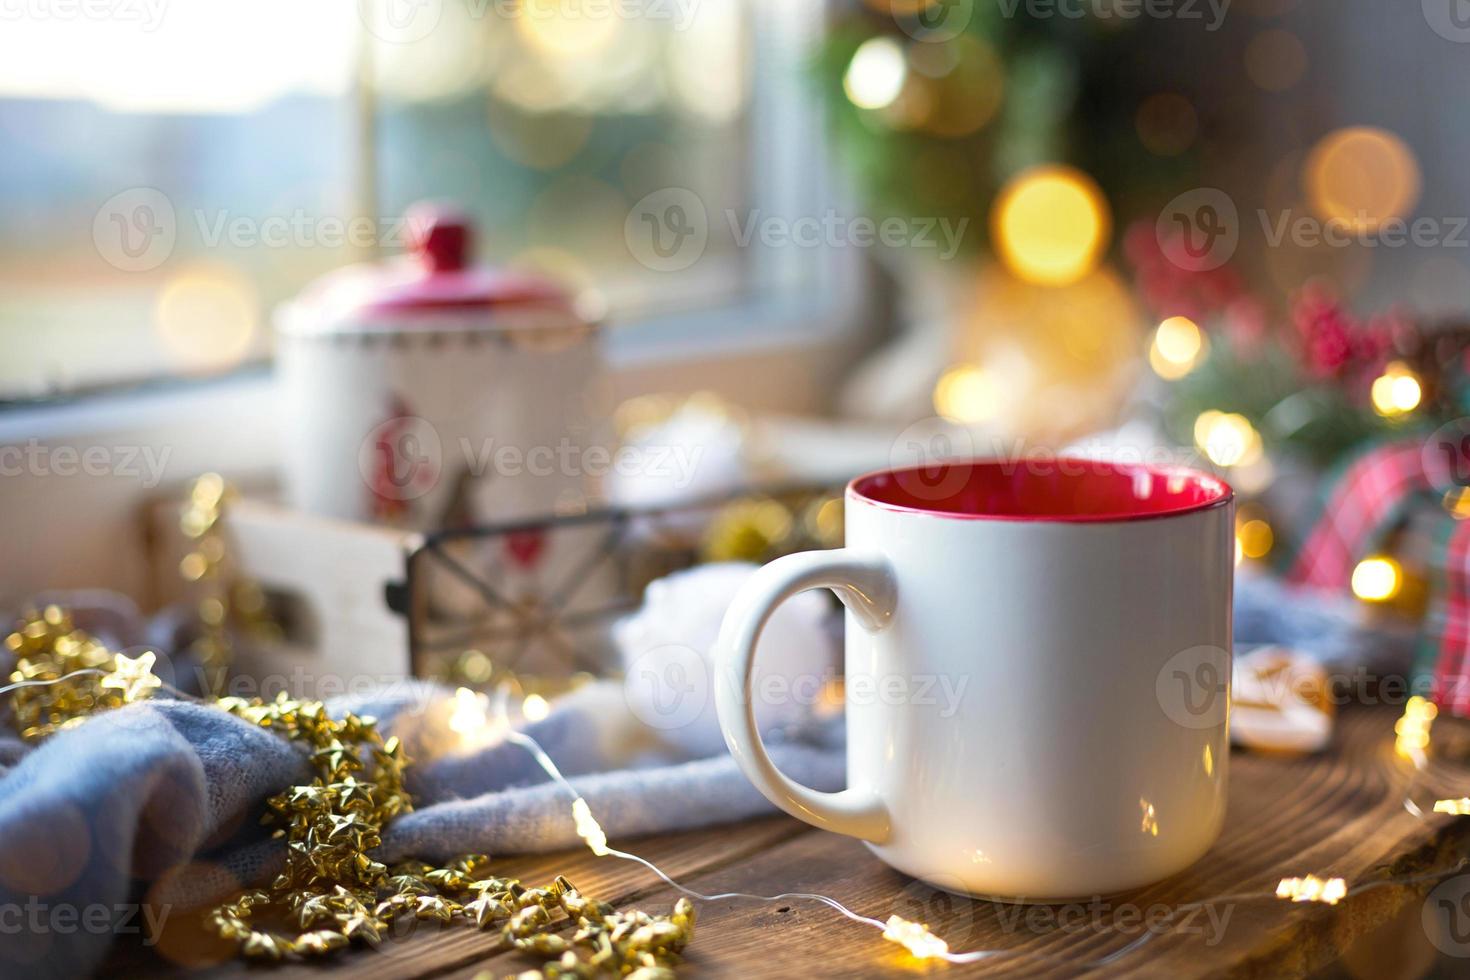 decoração de natal perto da janela em um aconchegante parapeito de madeira com uma caneca com uma bebida e um pote de biscoitos. luzes de fadas, galho de árvore de natal, bandeja de café da manhã ainda vida foto